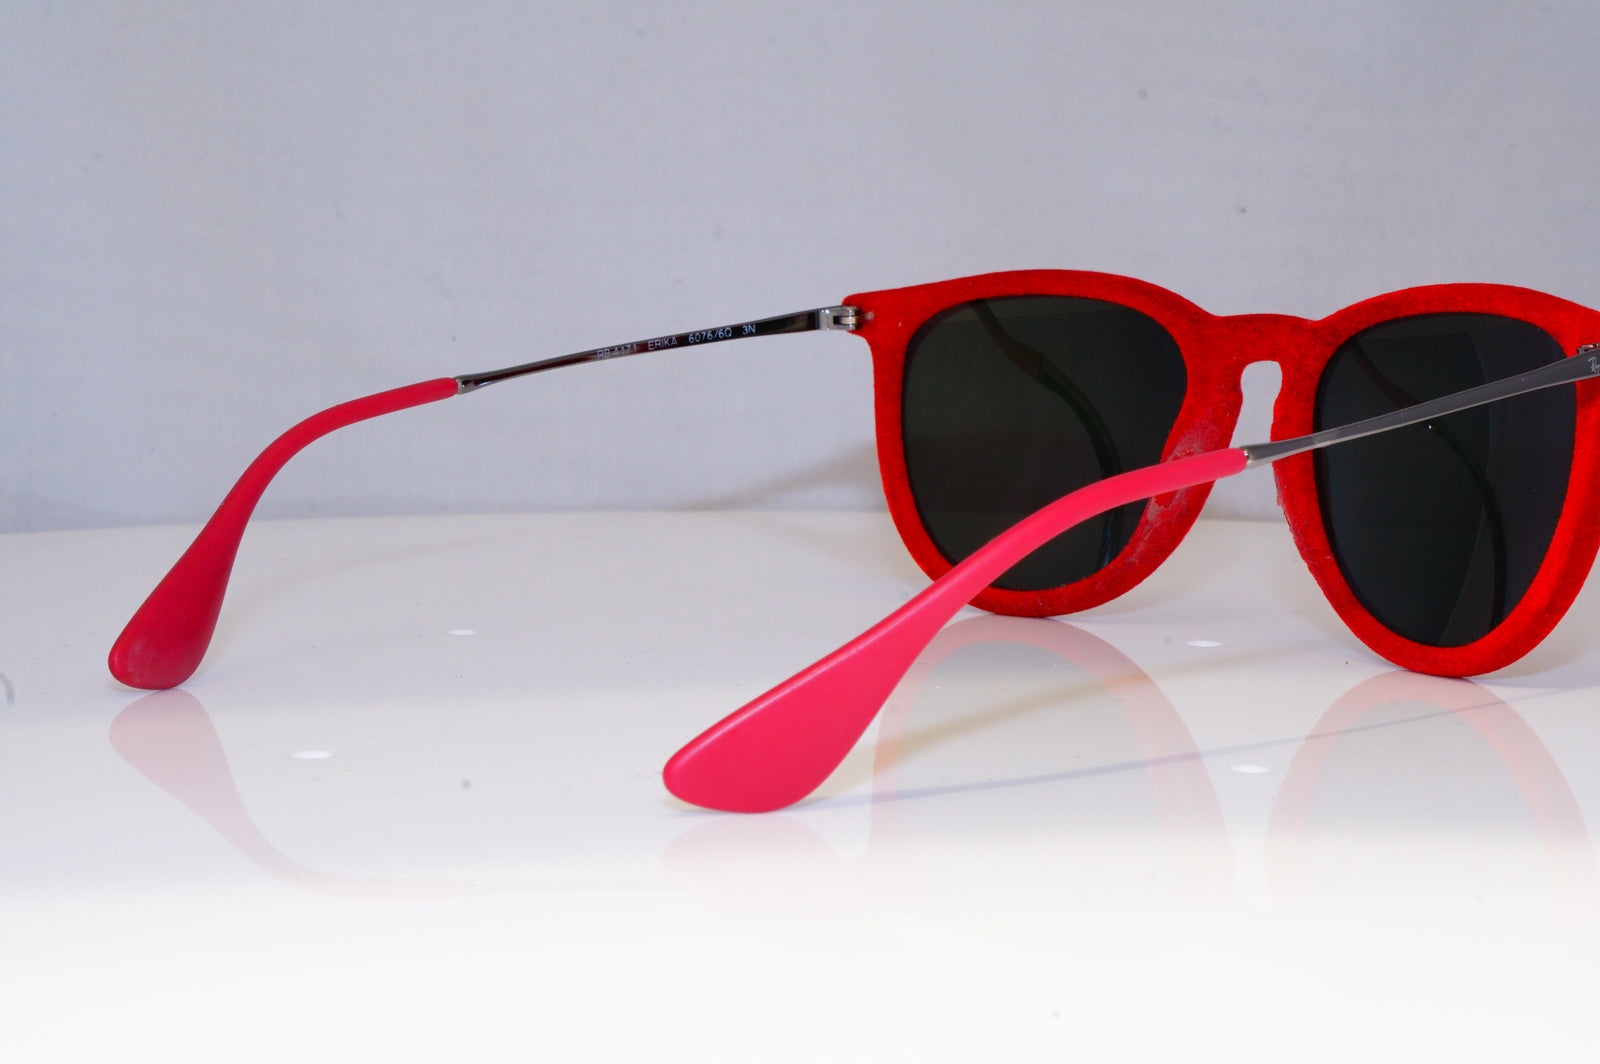 Red Frame Sunglasses, Velvet Sunglasses